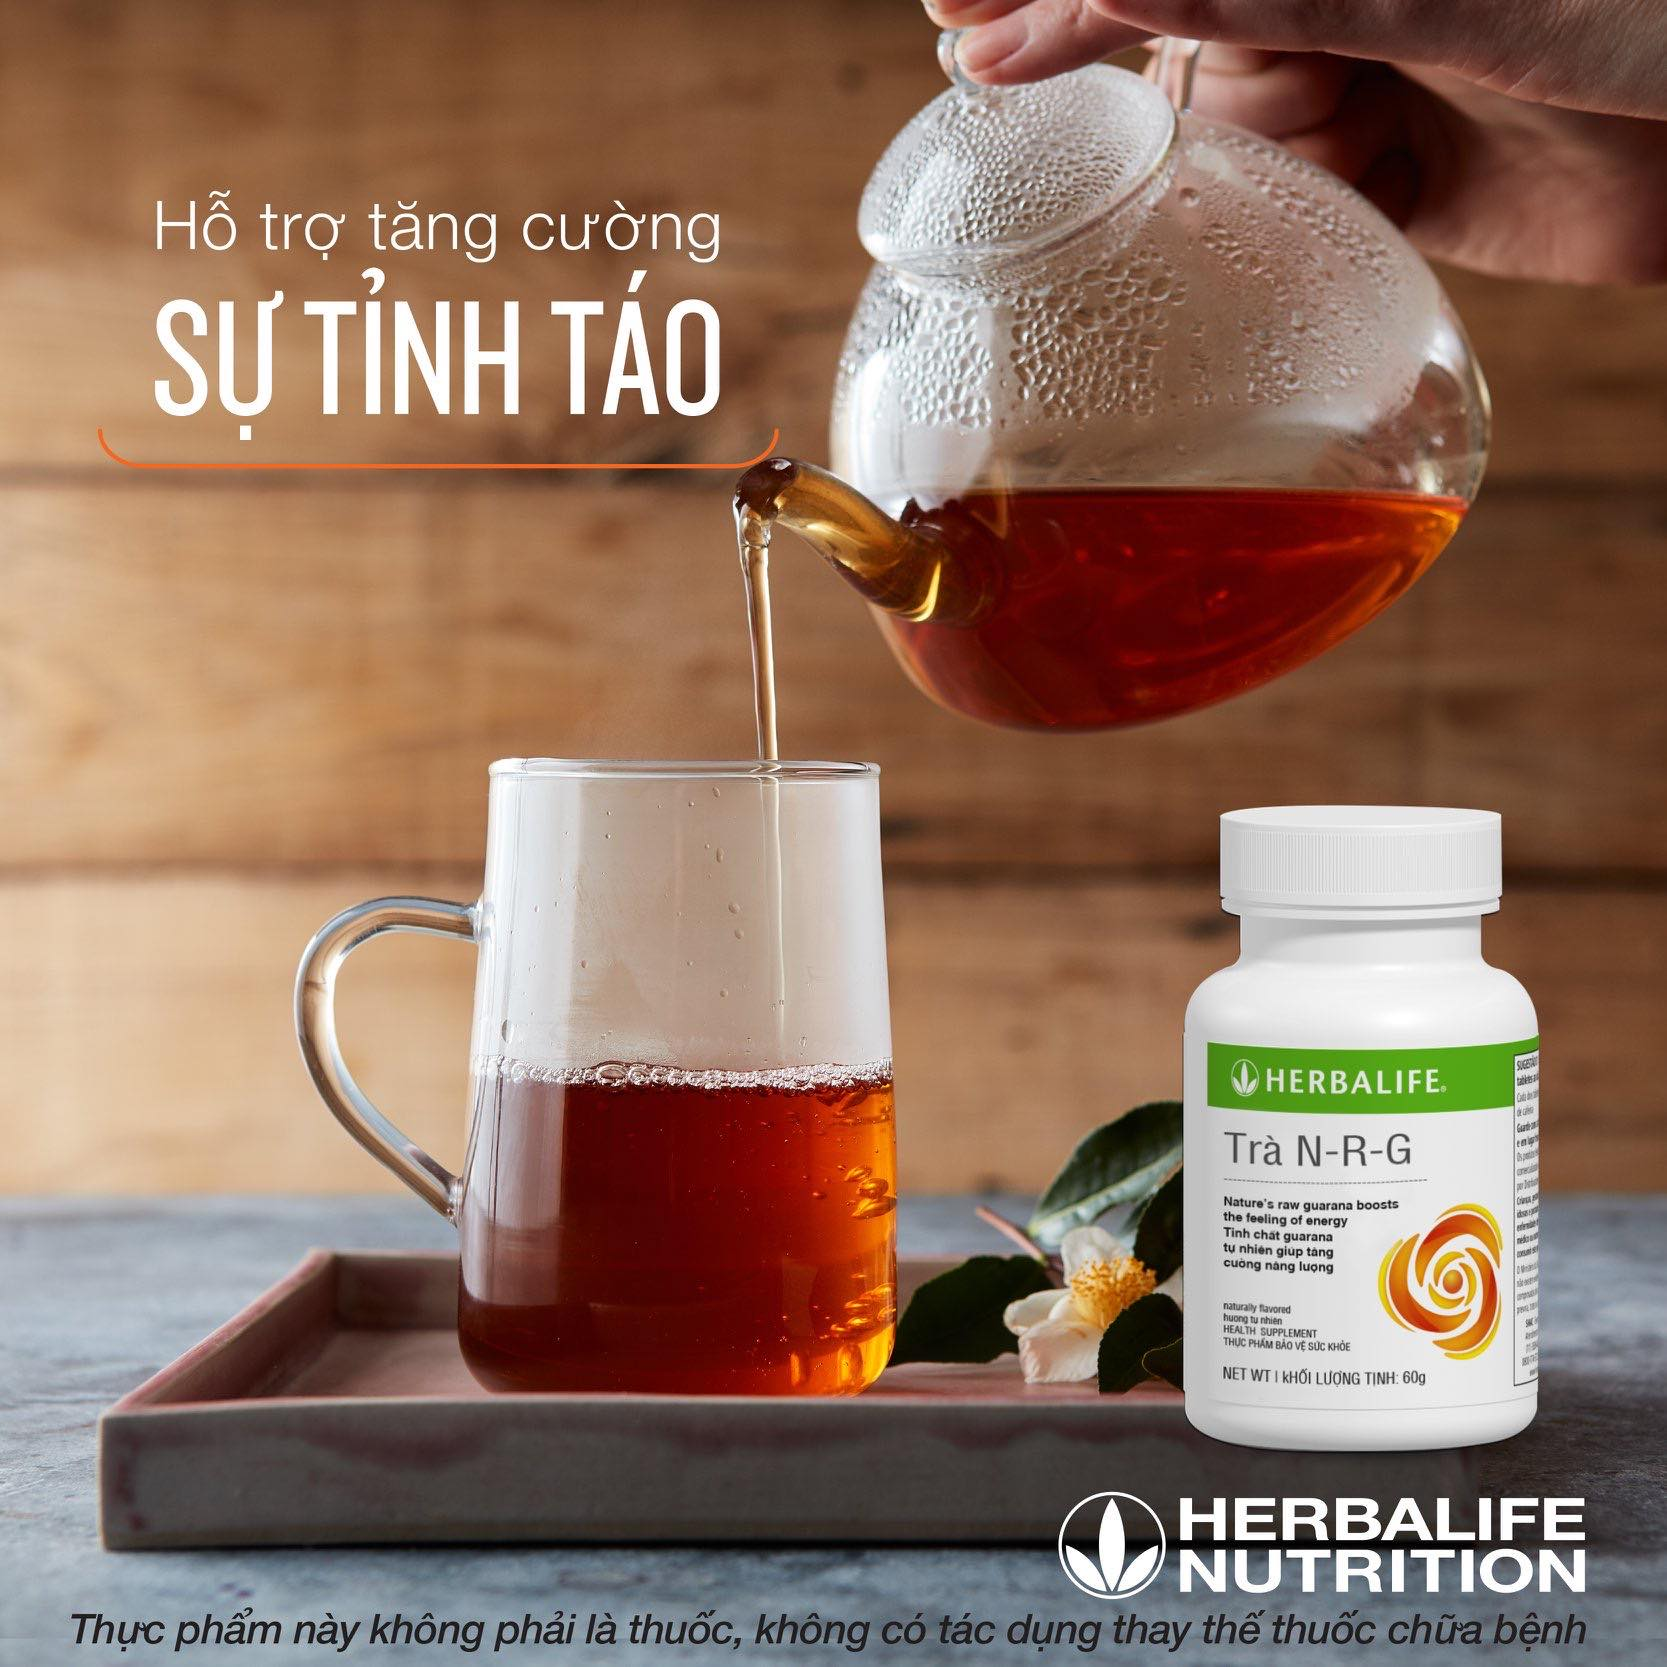 Sử dụng trà N-R-G Herbalife giúp hỗ trợ tăng cường sự tỉnh táo hiệu quả